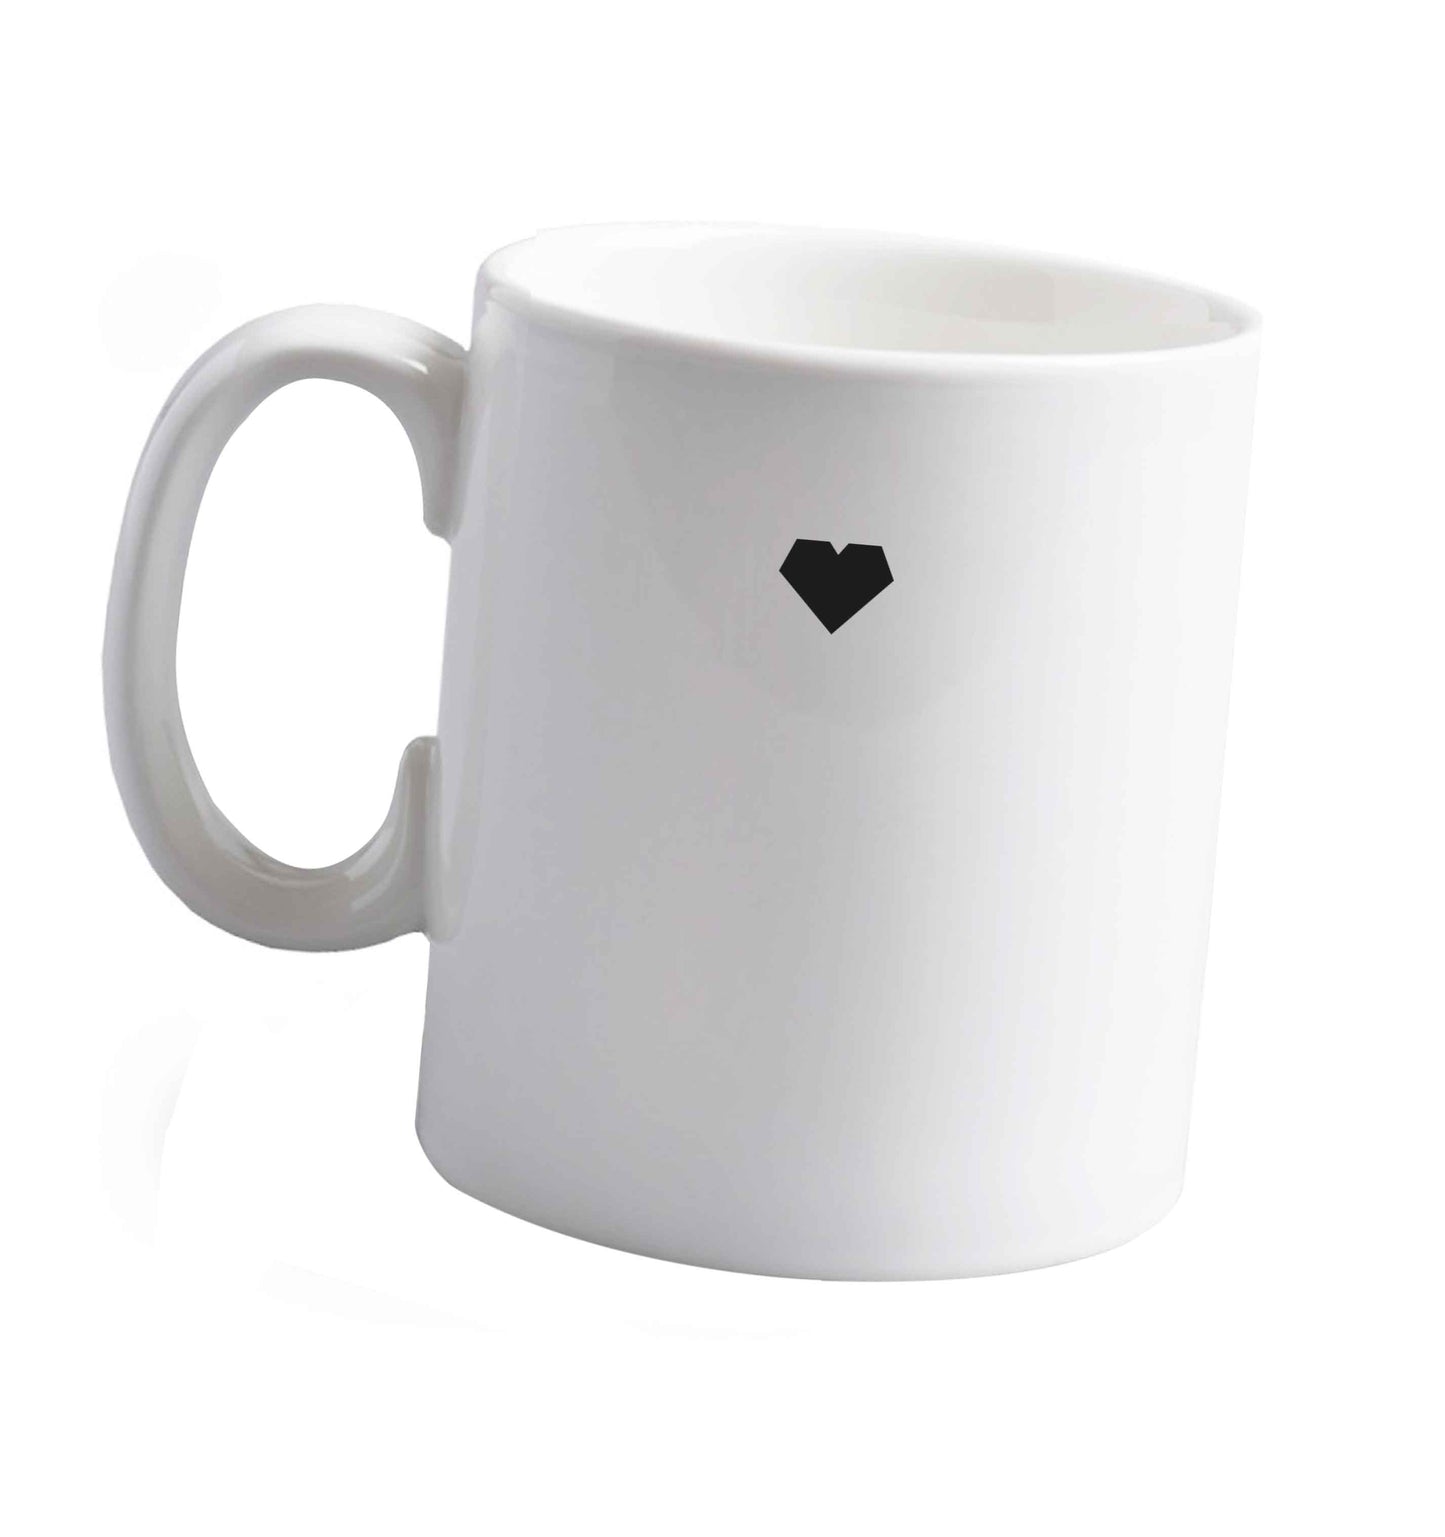 10 oz Tiny heart ceramic mug right handed